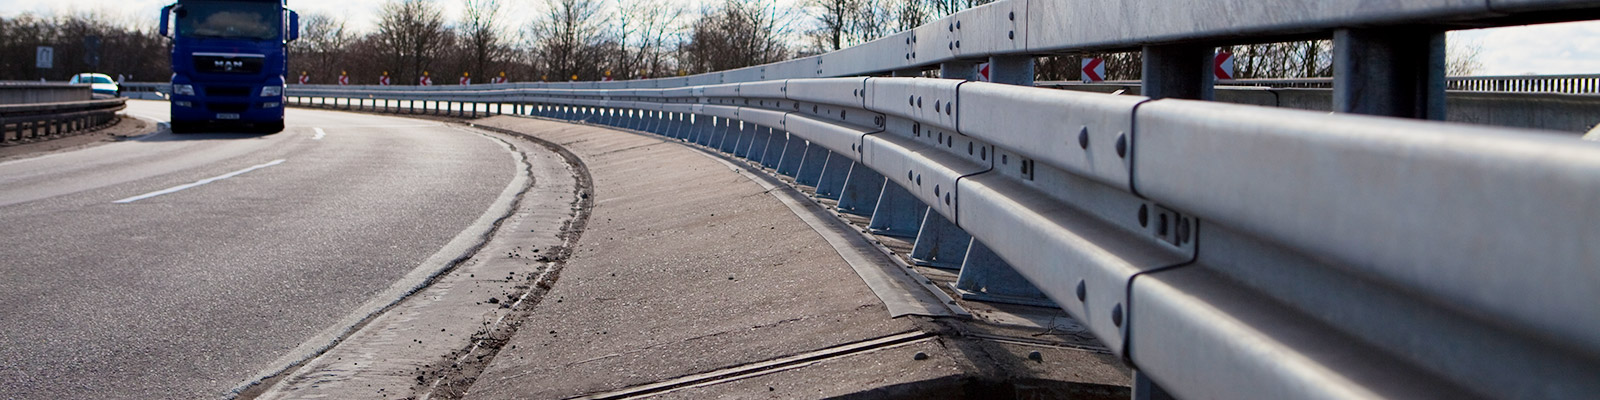 Nahaufnahme des Eco-rail Leitplankensystems auf einer Autobahn, hergestellt von Meiser Strassenausstattung.